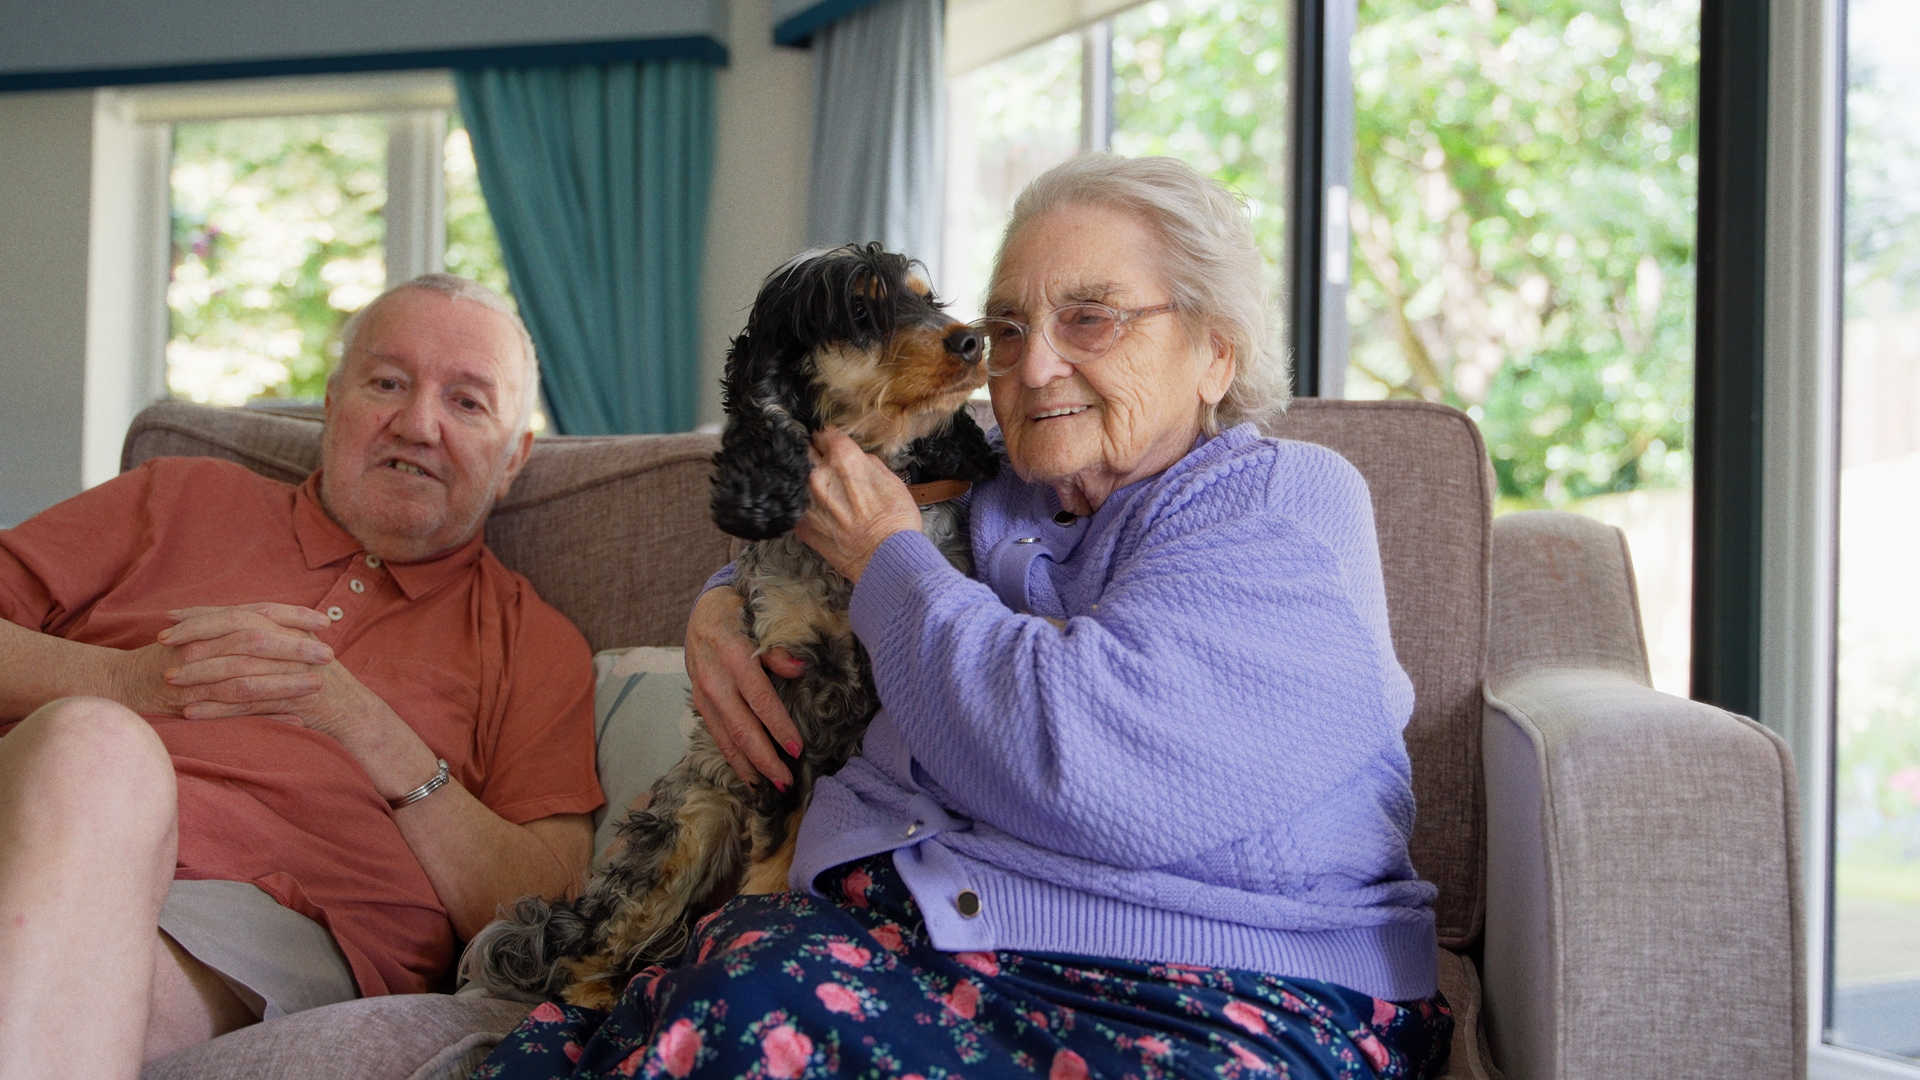 elderly lady smiling with dog